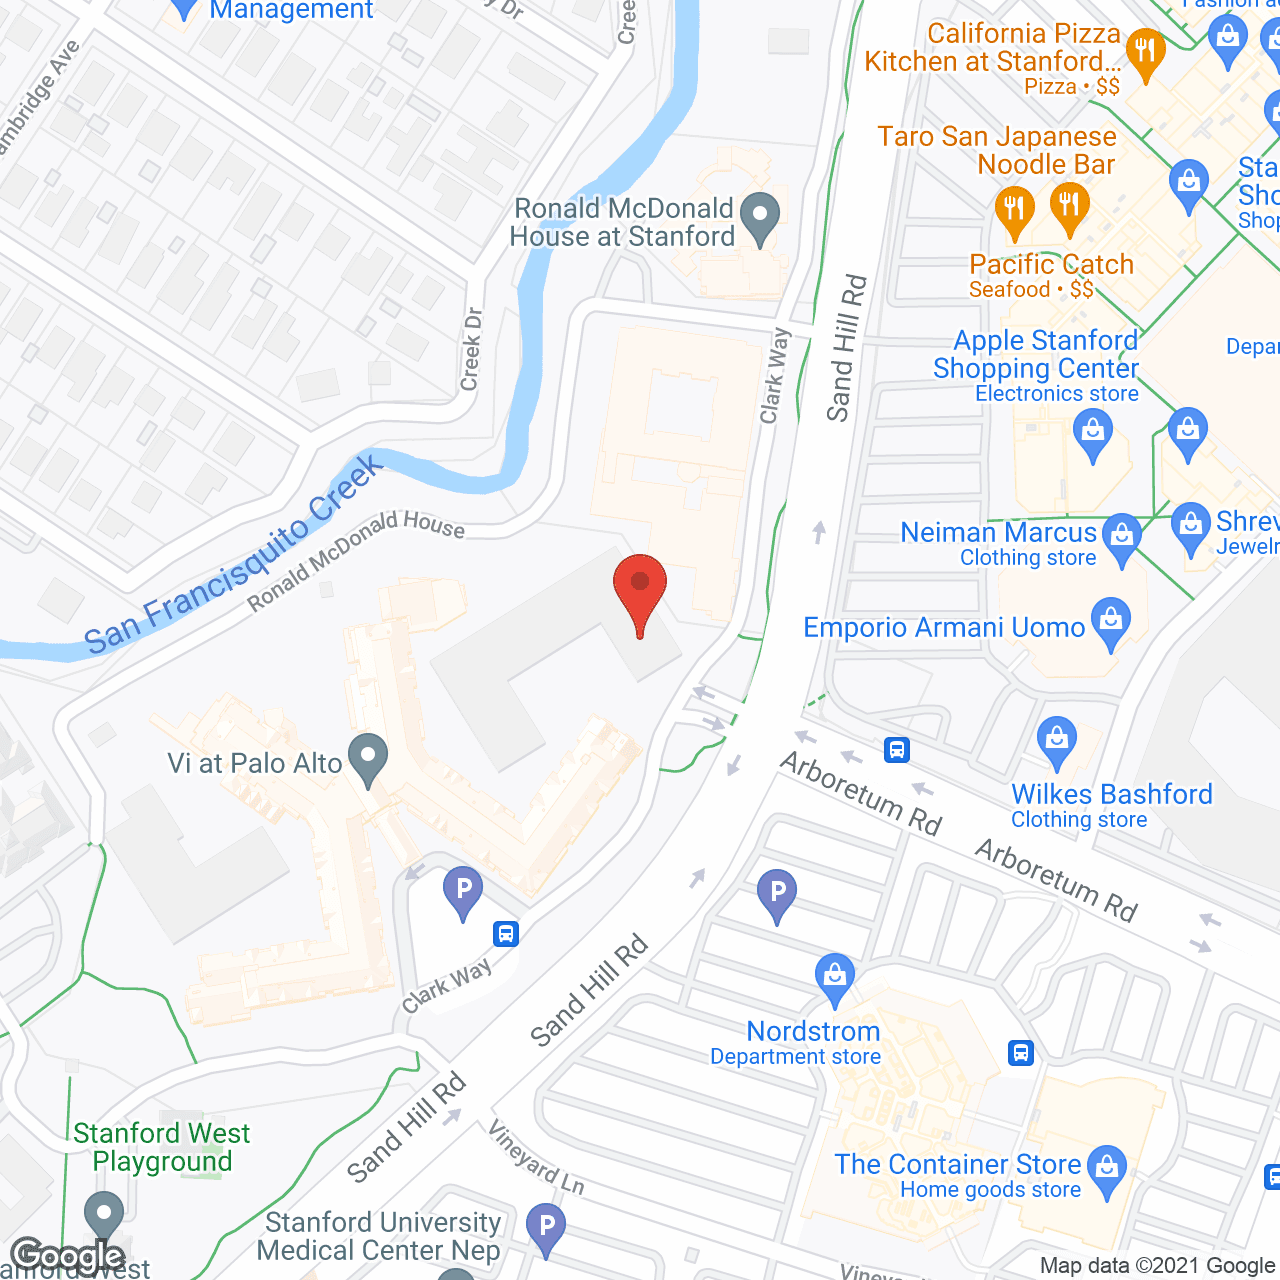 Vi at Palo Alto, a CCRC in google map